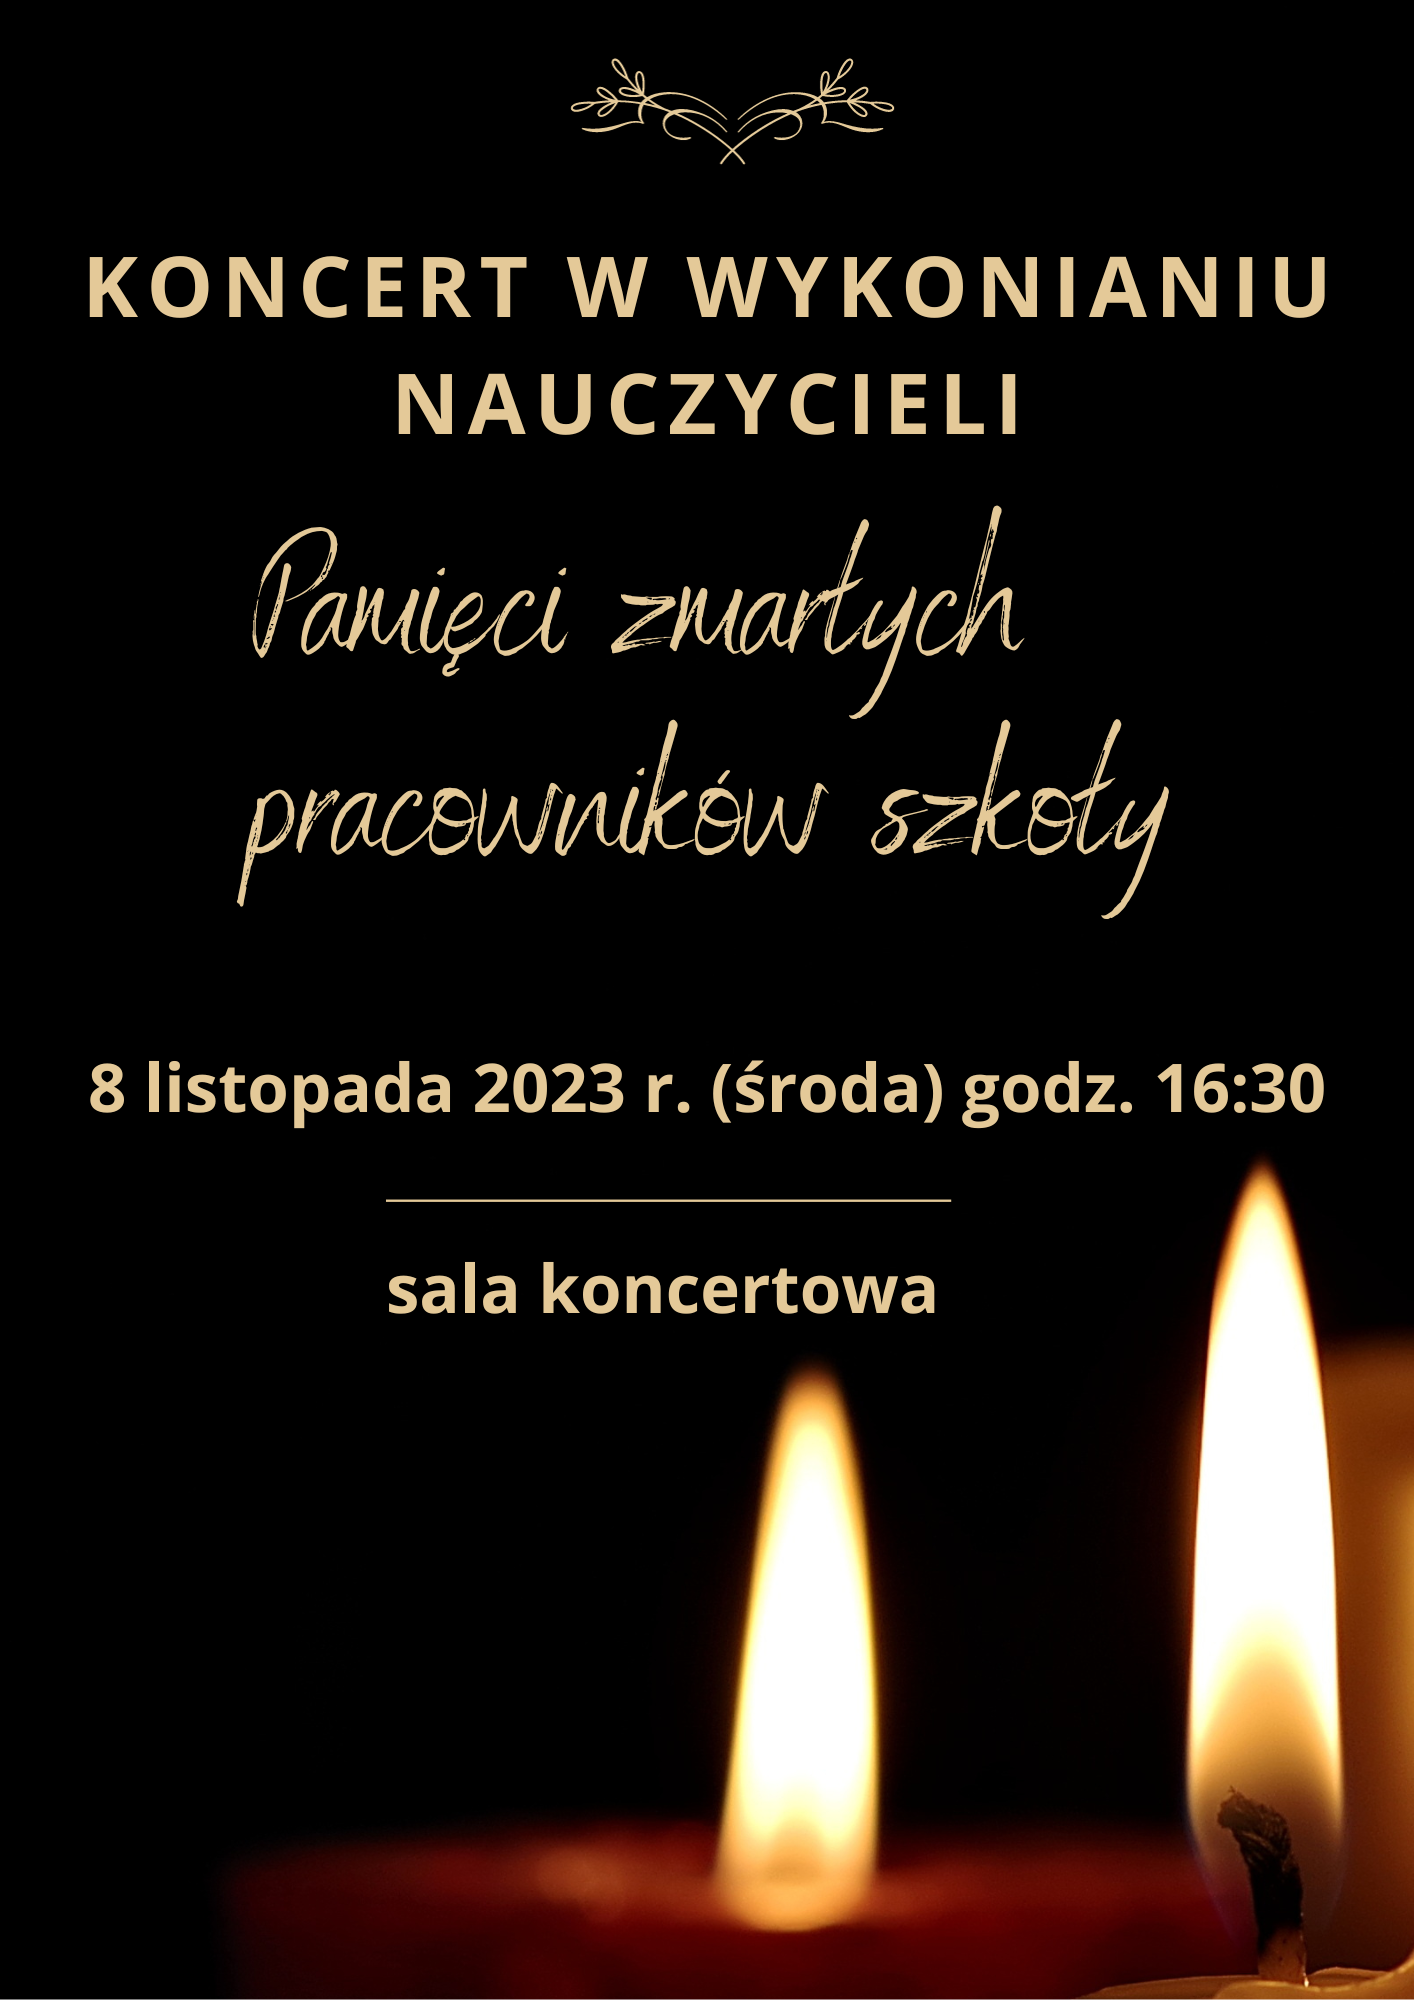 Plakat ze szczegółami koncertu na czarnym tle i zdjęciem płonących świec